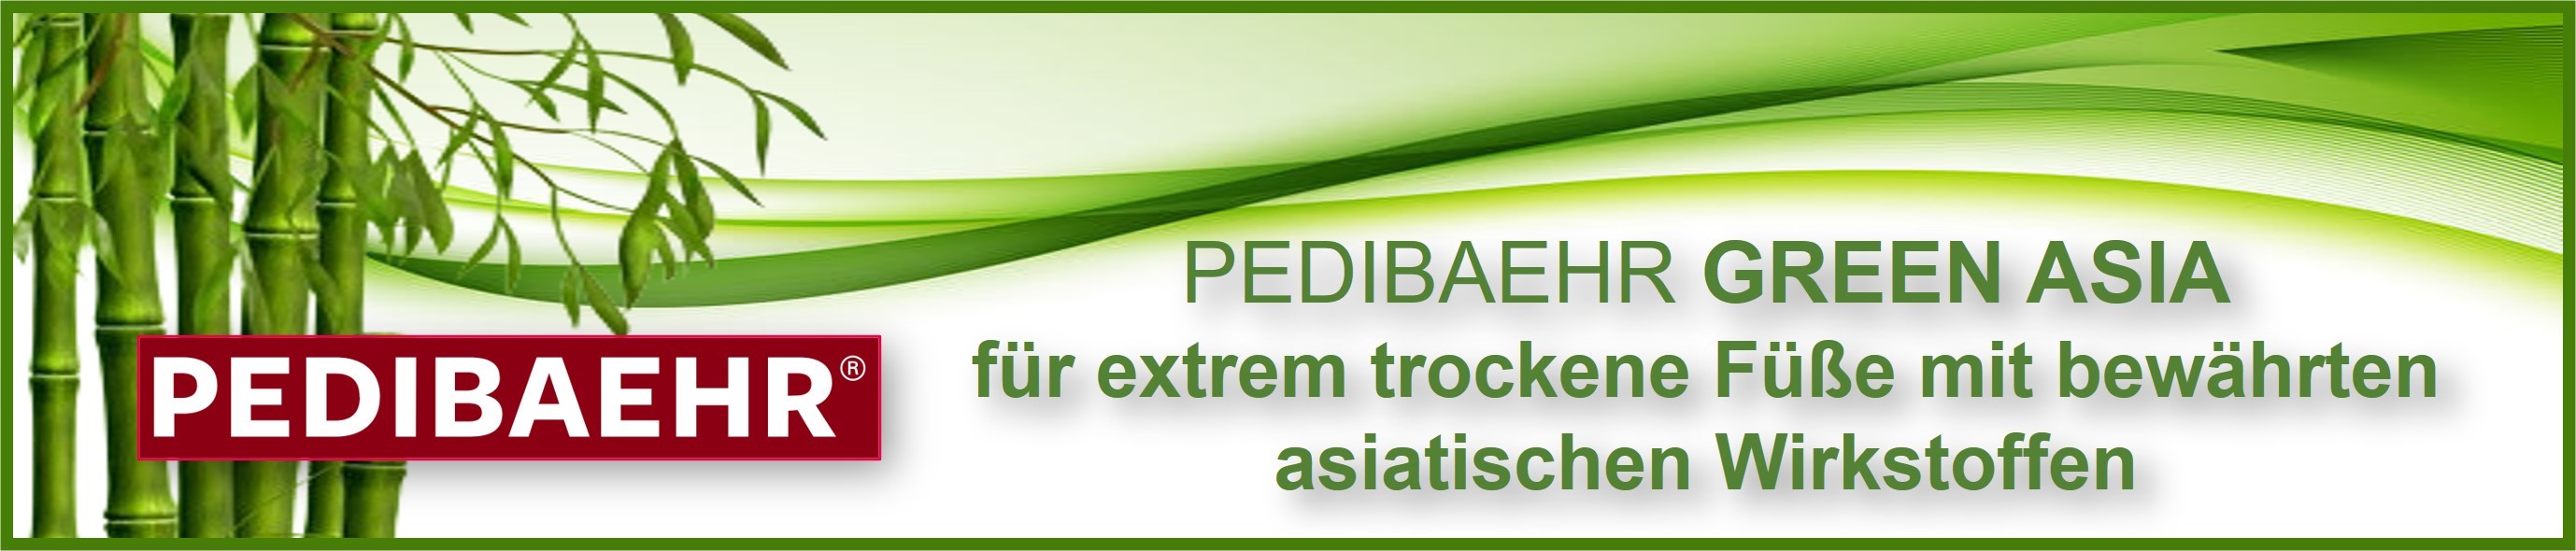 PEDIBAEHR GREEN ASIA - die neue Fußpflegecreme mit asiatischen Wirkstoffen